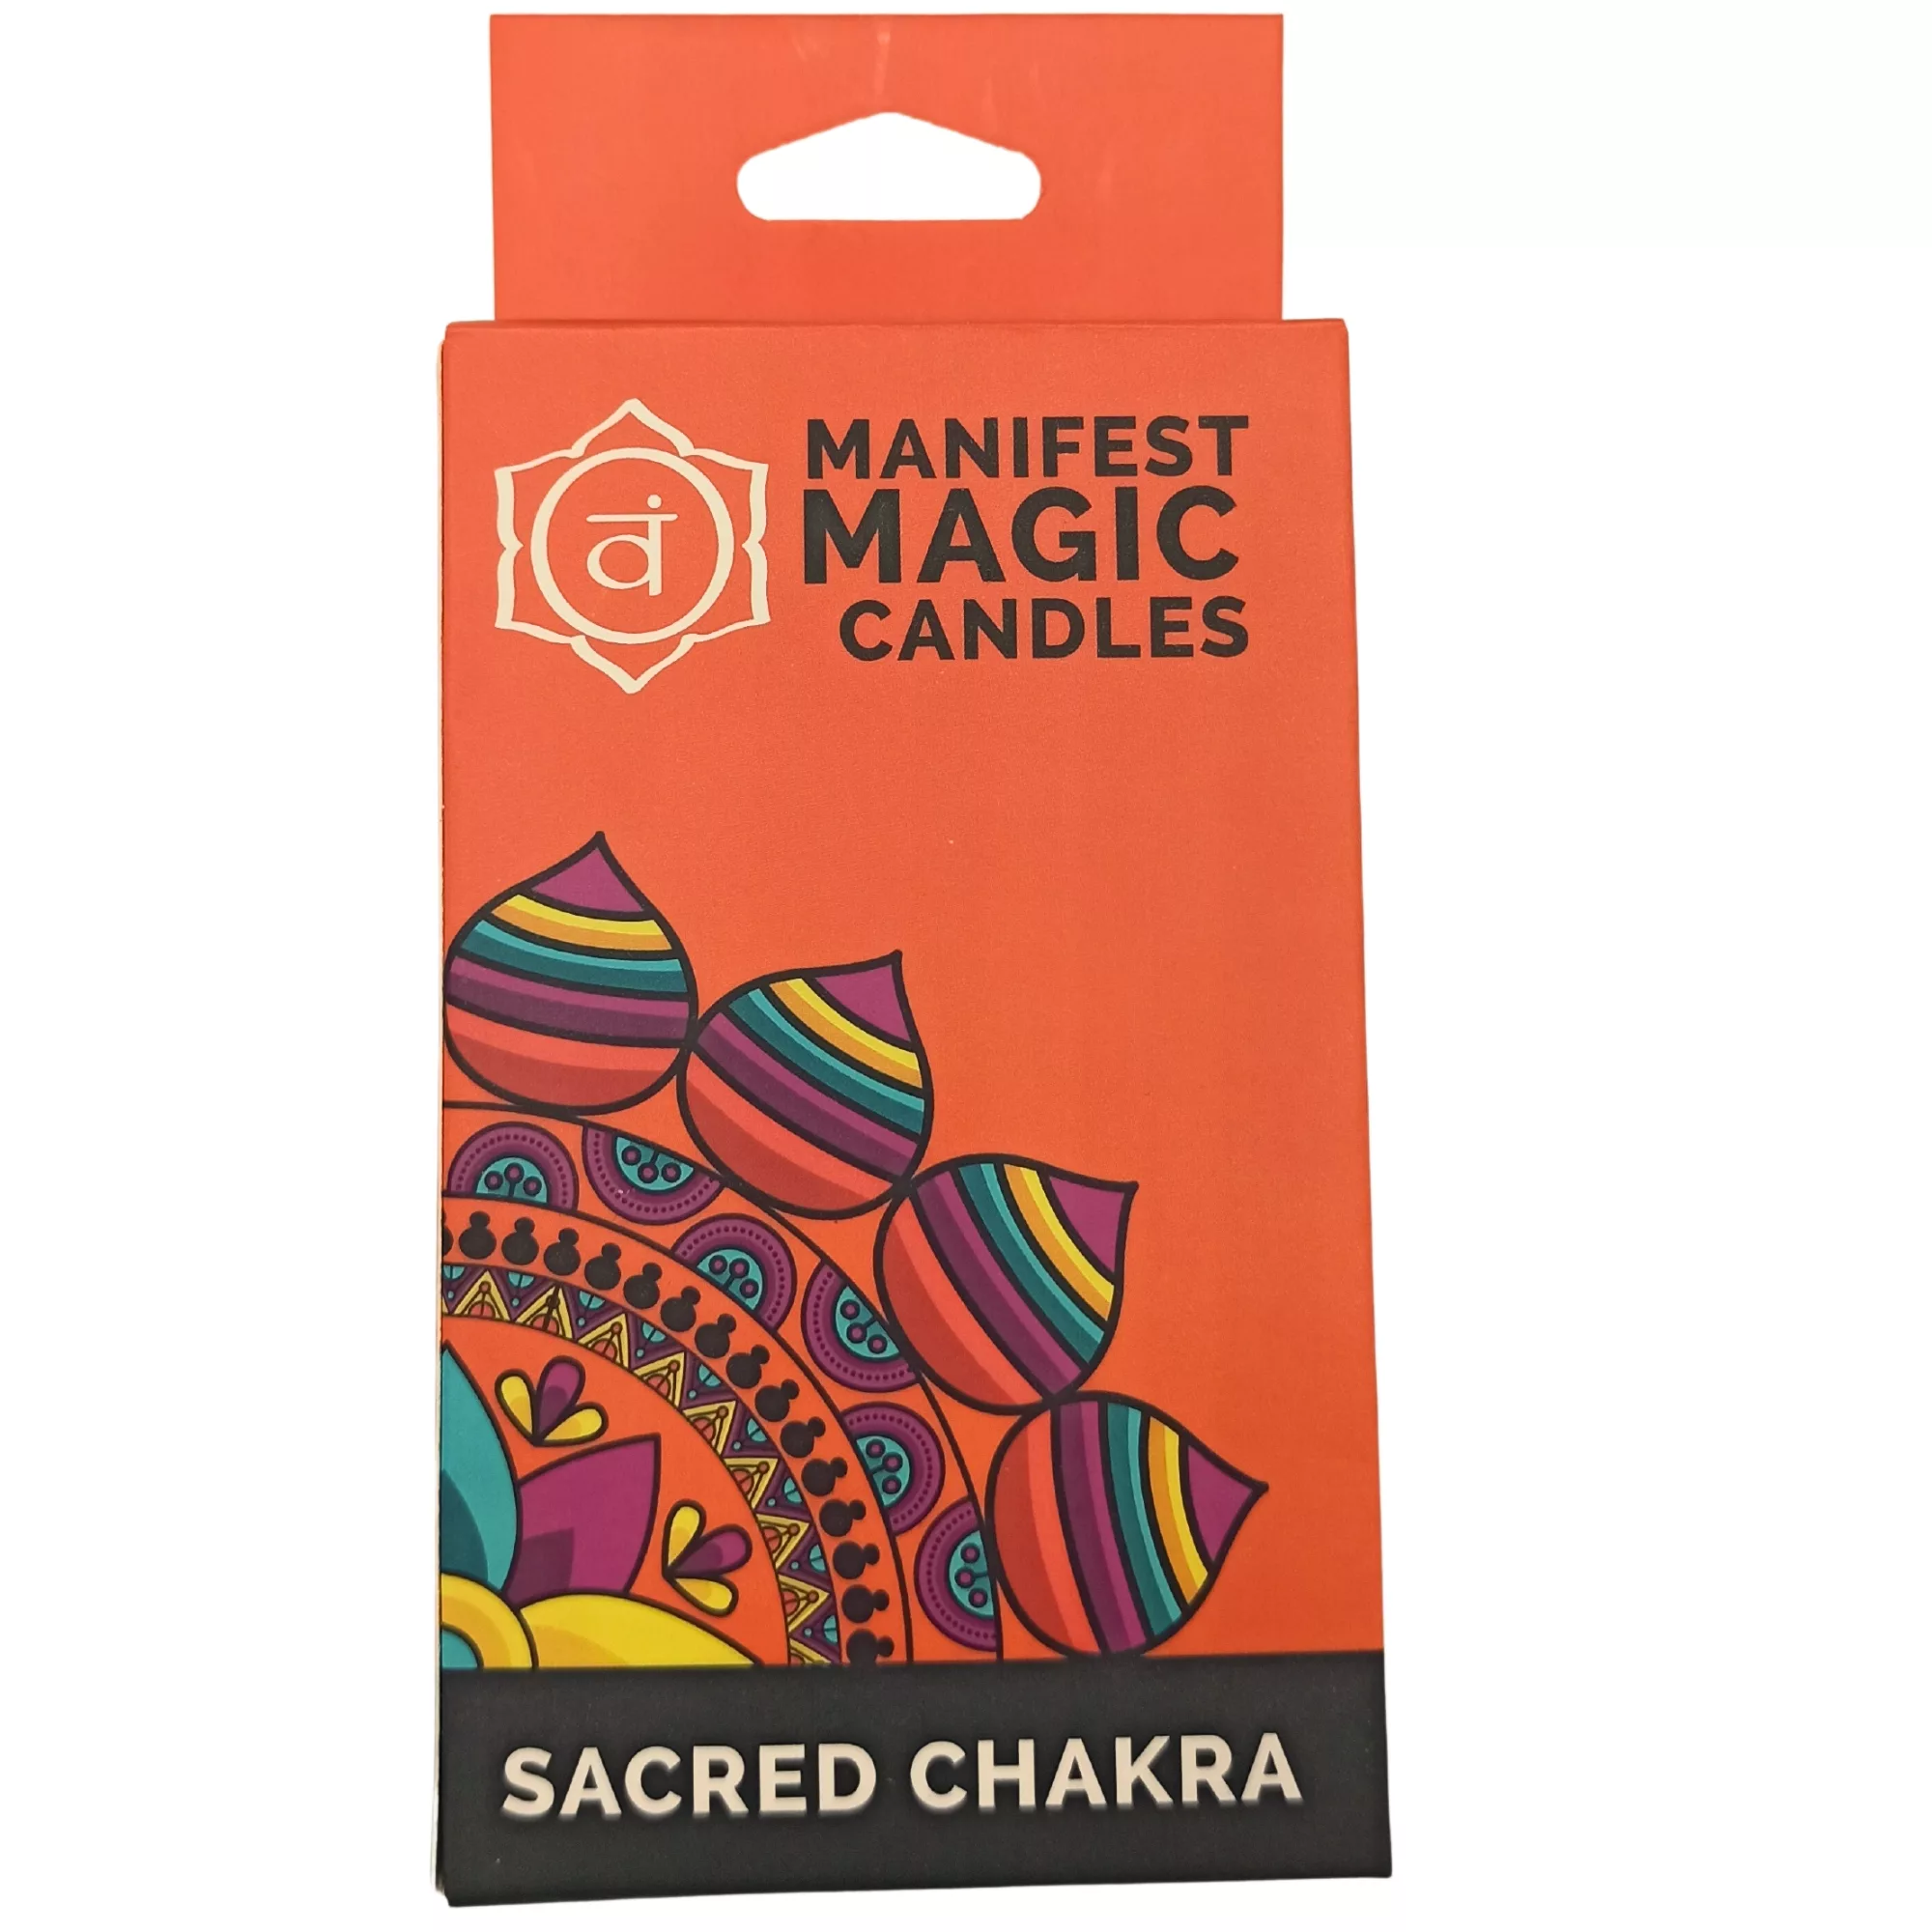 Manifest Magic Candles (pack of 12) – Orange – Sacred Chakra